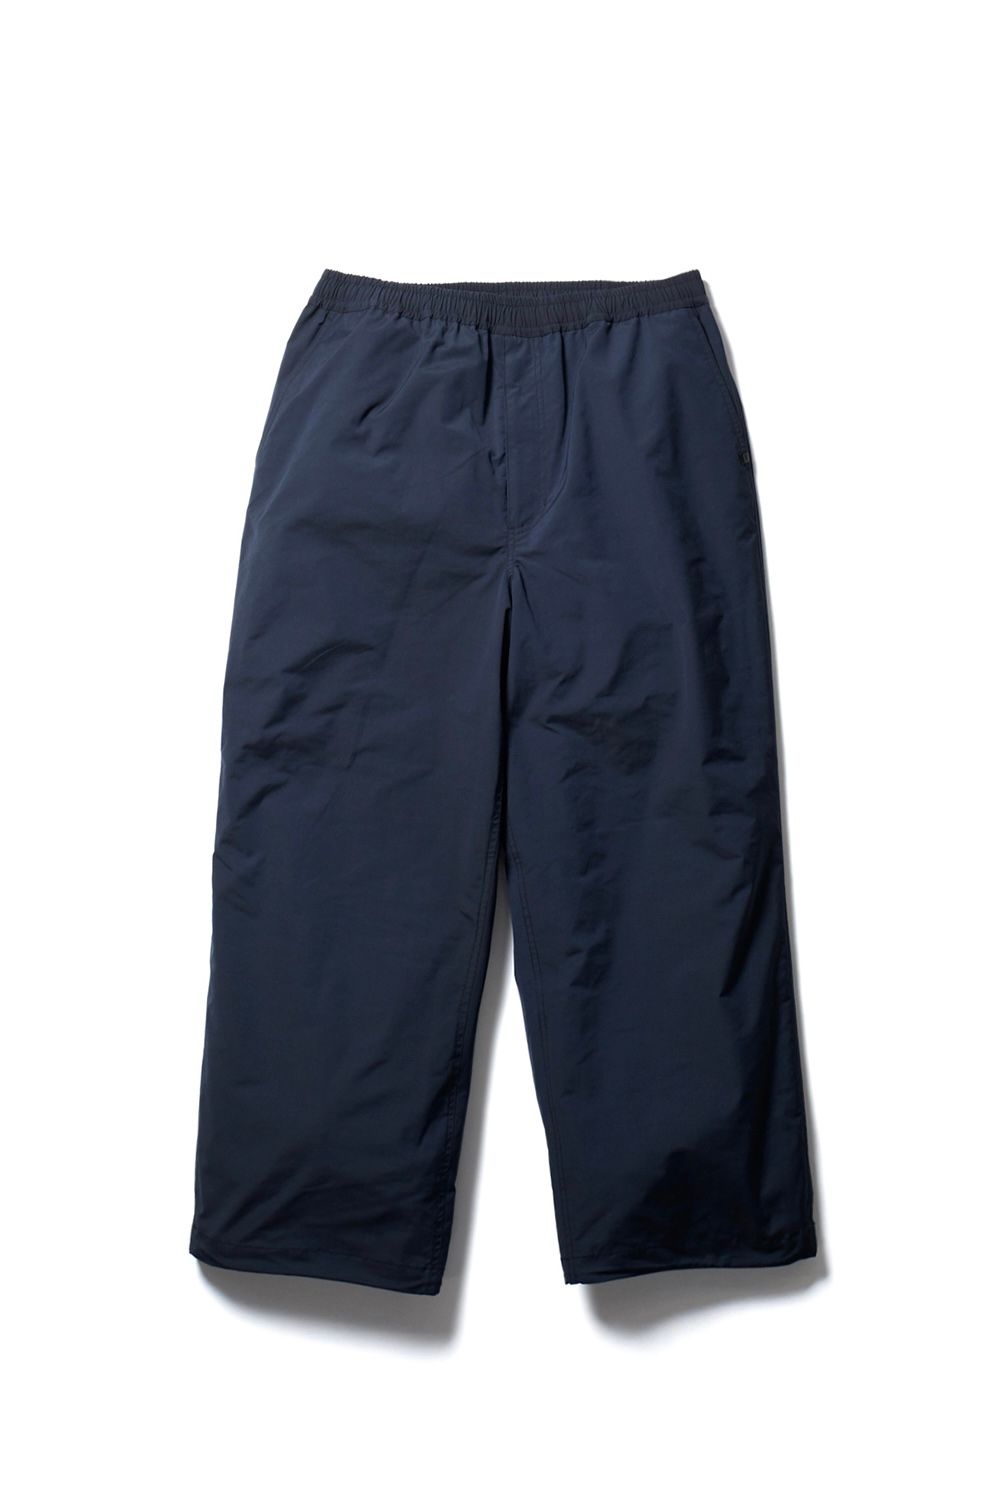 DAIWA PIER39 - tech easy trousers poly -dark navy- 22aw | asterisk